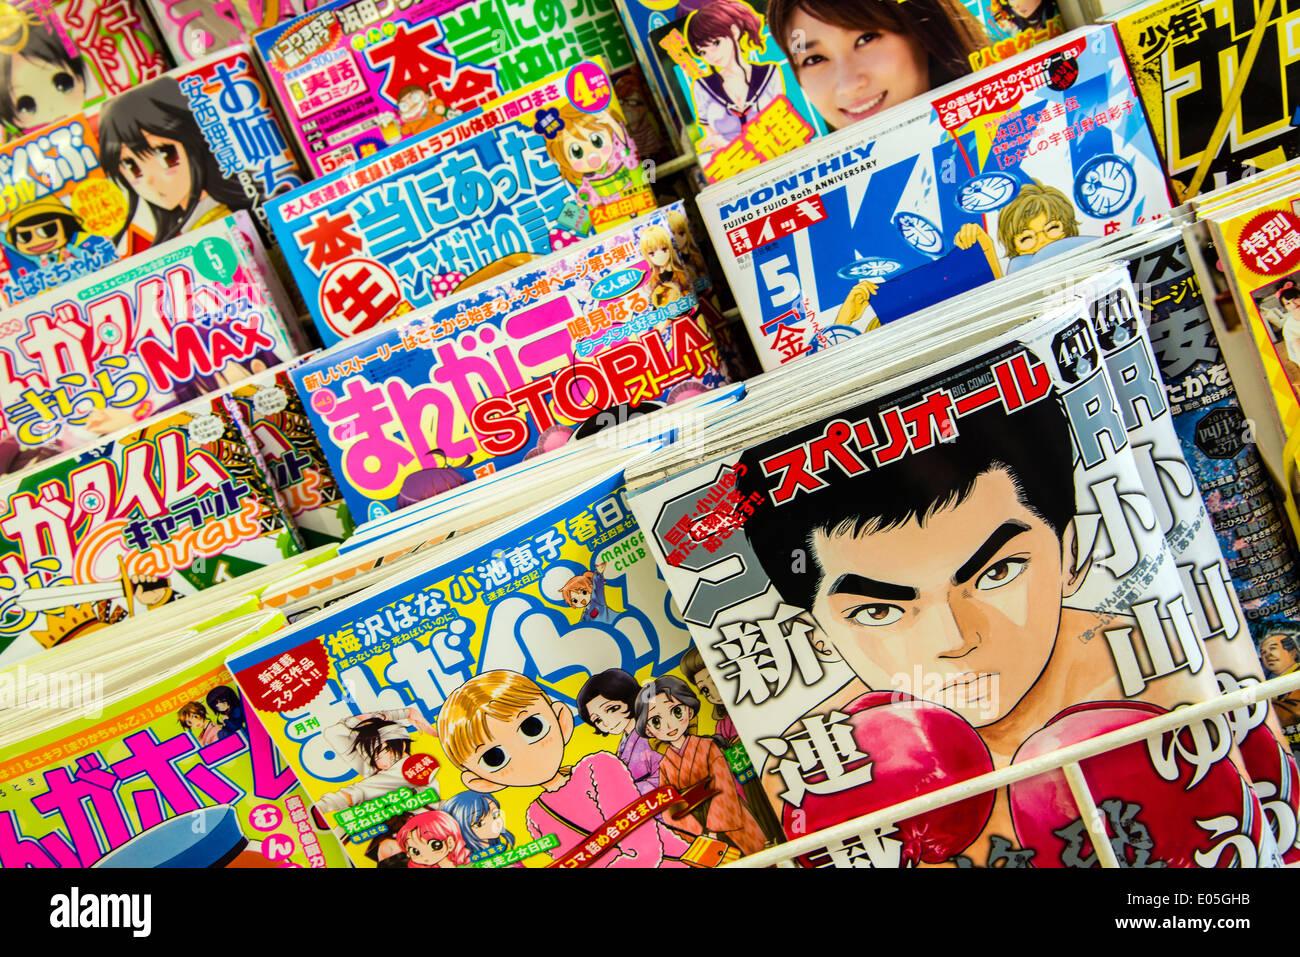 Des piles de magazines et publications manga comics à la maison de la presse, Kyoto, Japon Banque D'Images